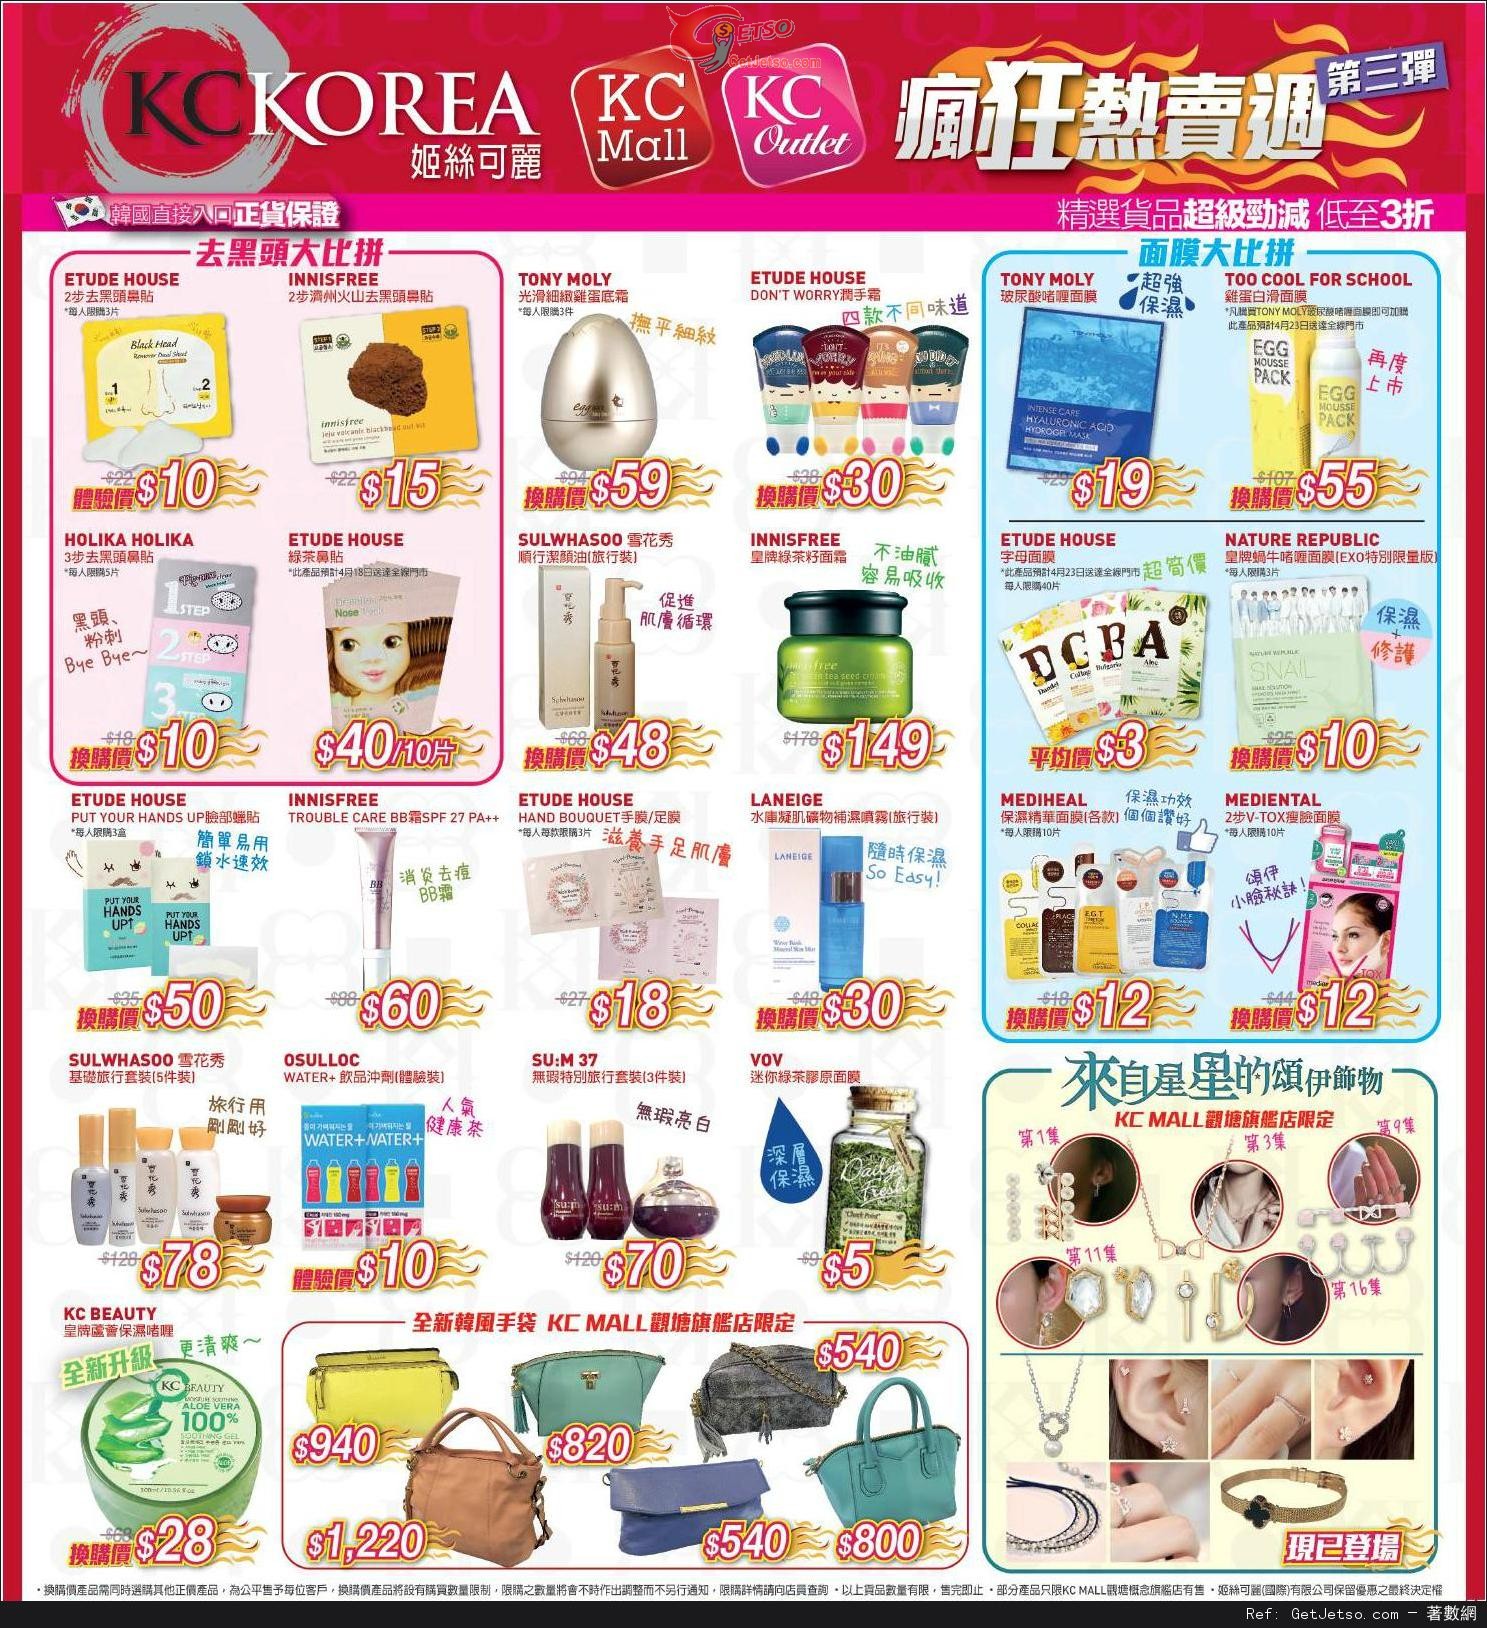 KC Korea 韓國護膚化妝品店瘋狂熱賣優惠(至14年4月20日)圖片1